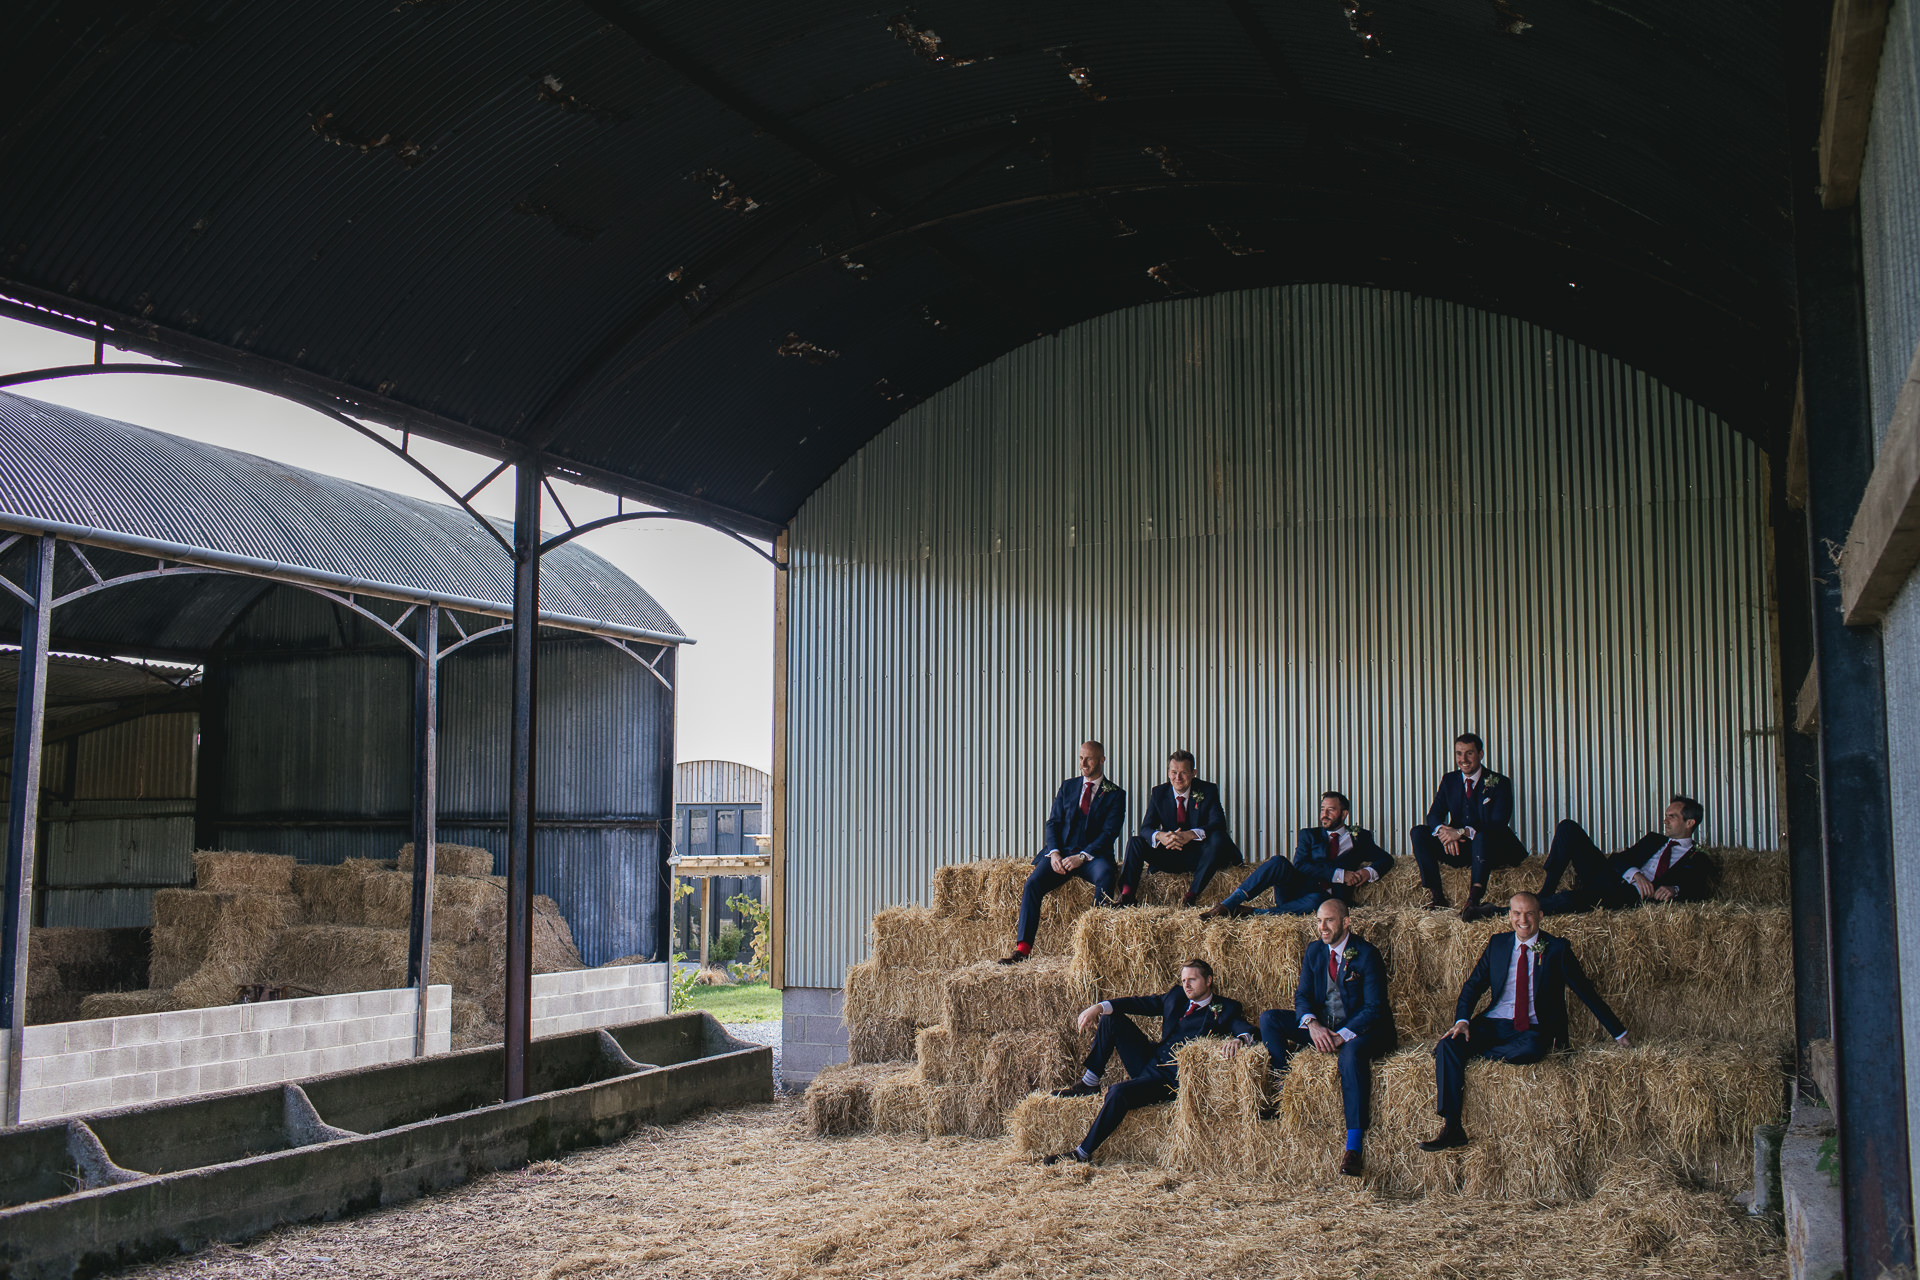 Group of groomsmen posing on hay bales in a barn